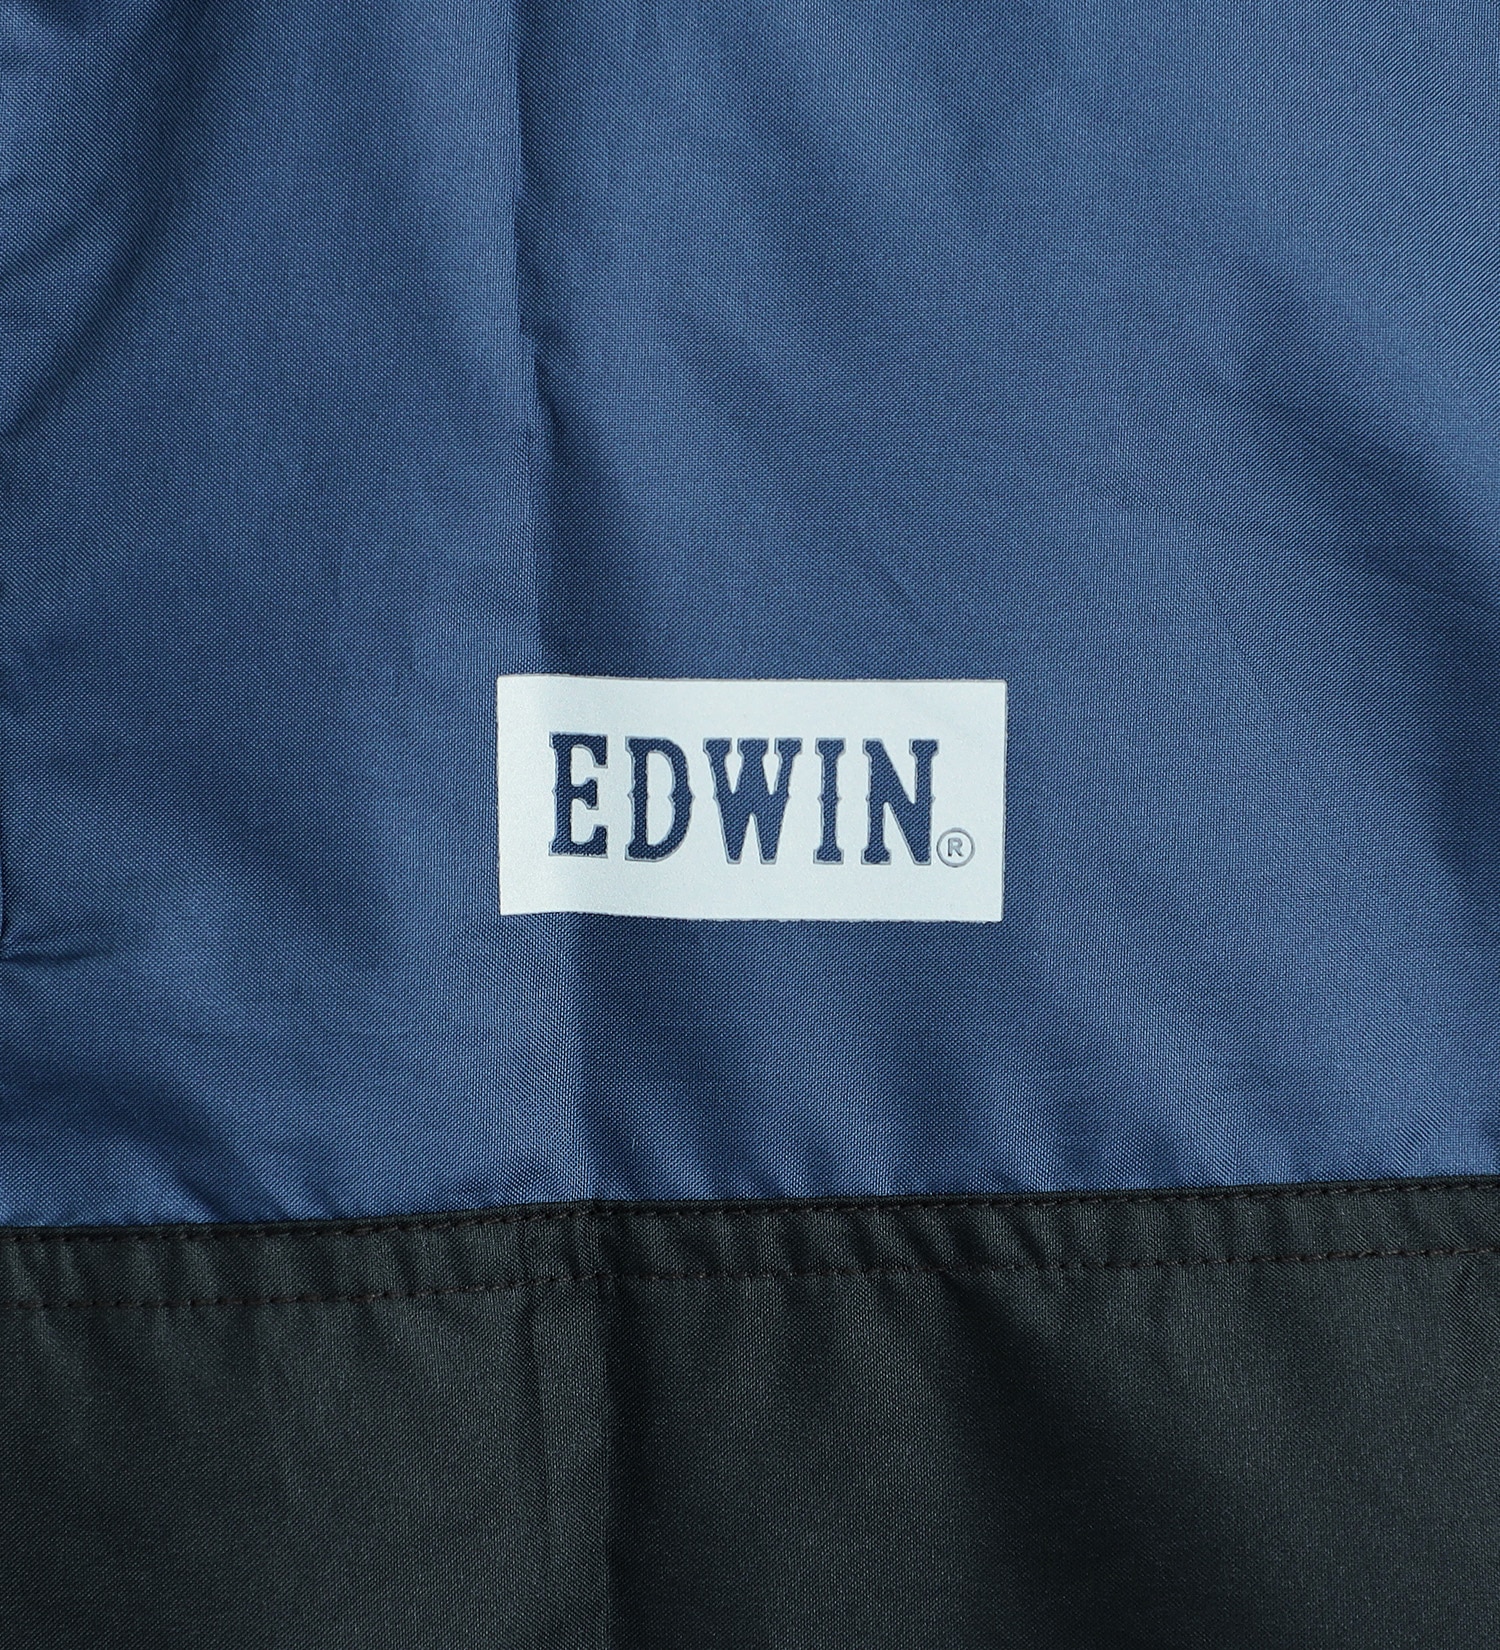 EDWIN(エドウイン)の【GW SALE】EDWIN レインポンチョ|ファッション雑貨/レインウェア/ポンチョ/メンズ|ブラック